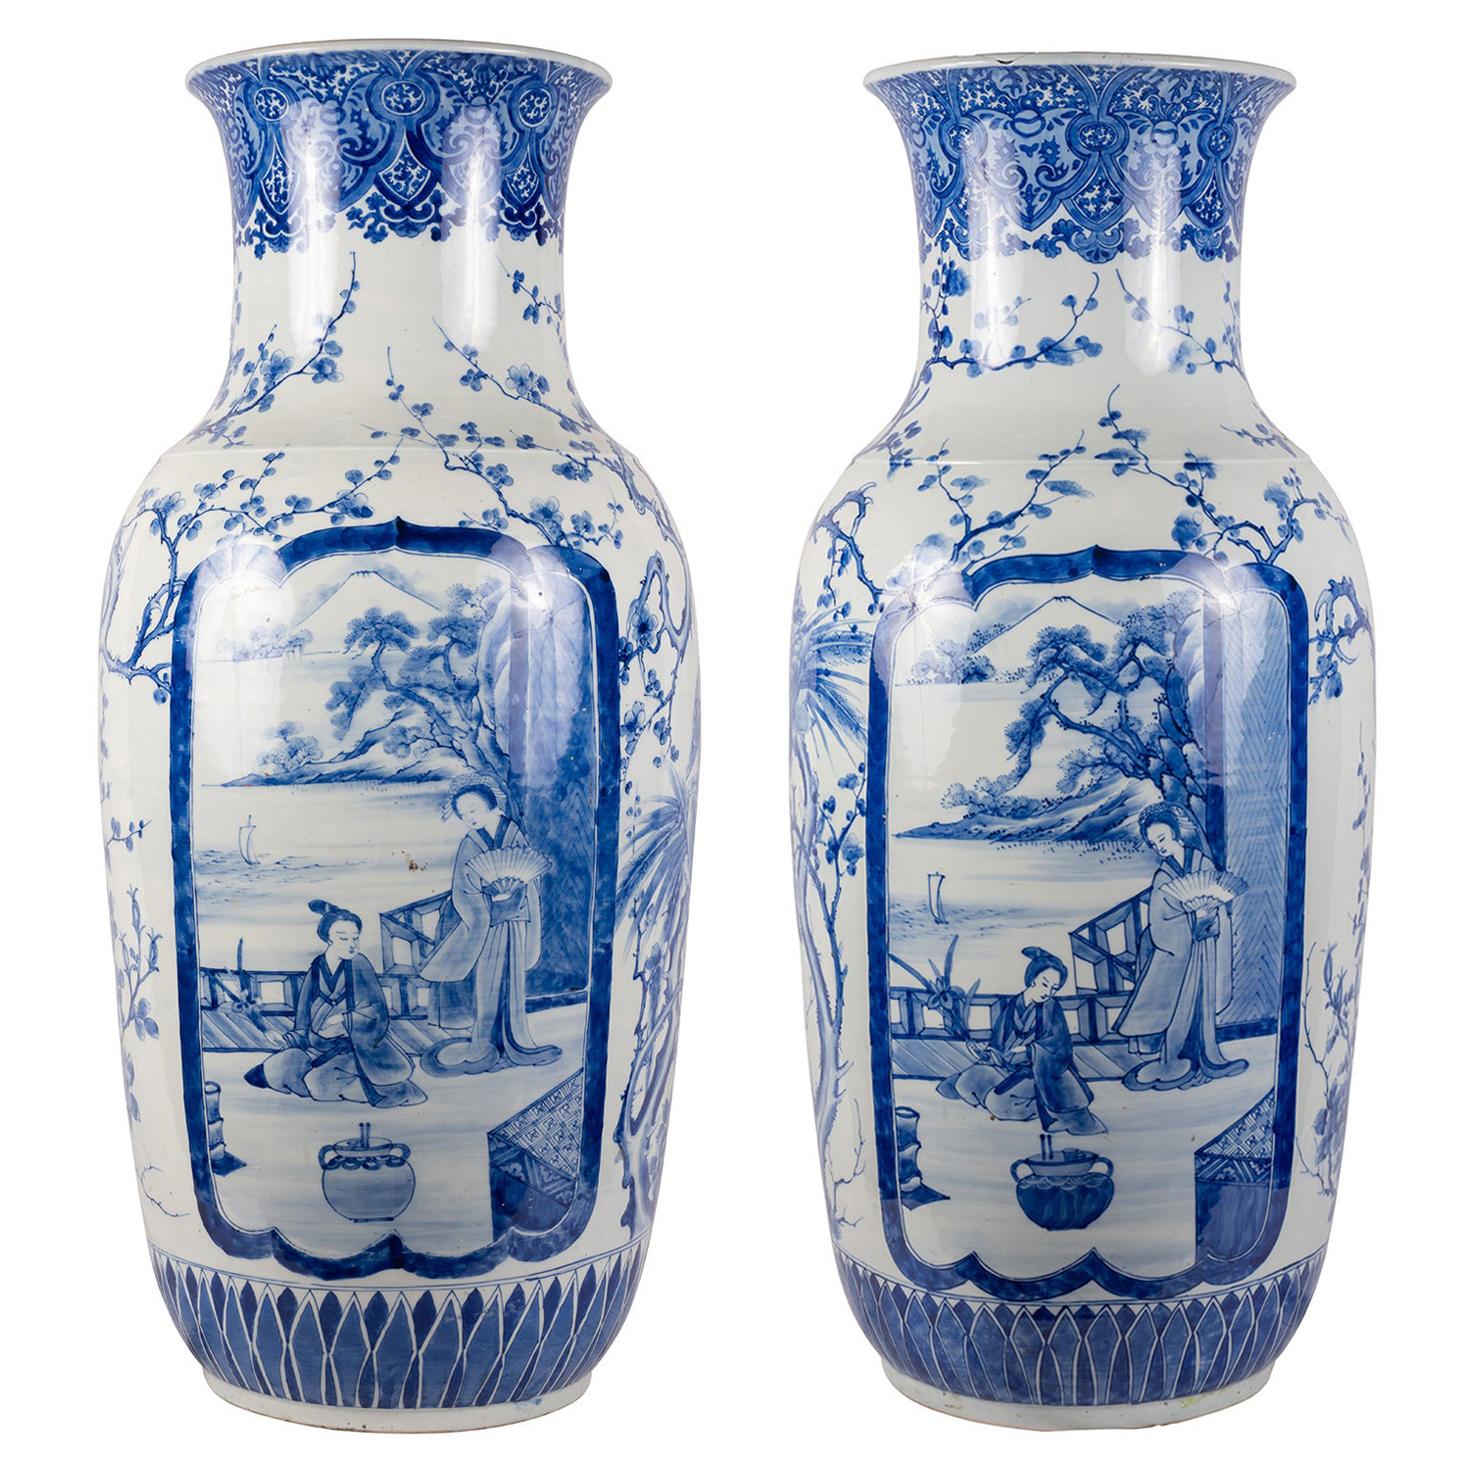 Grande paire de vases japonais du 19ème siècle, bleu et blanc